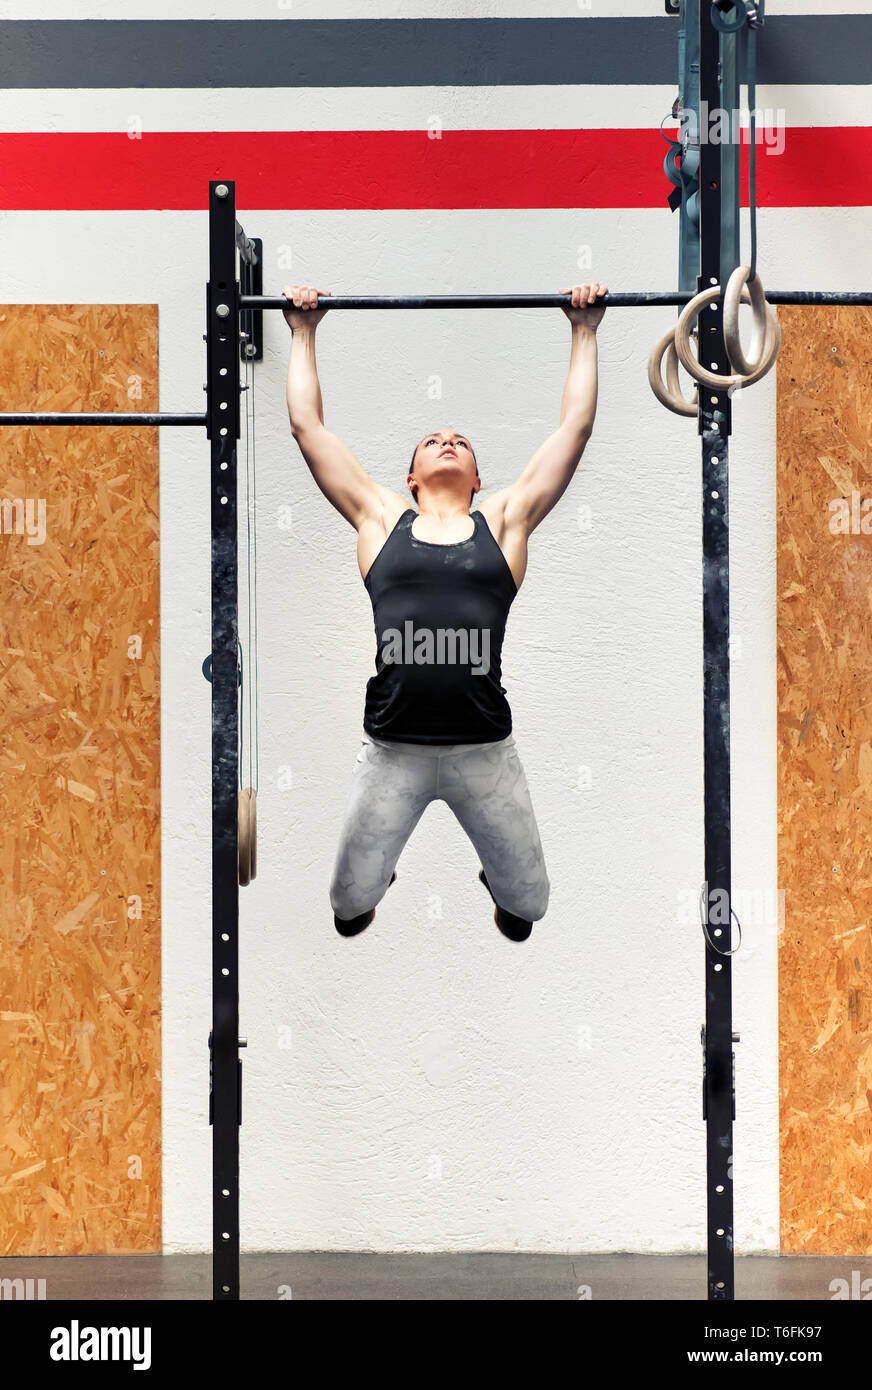 Colocar musculares fuertes chica joven atleta haciendo pull-ups en un bar durante su entrenamiento en una vista frontal completa dentro de un gimnasio profesional Foto de stock